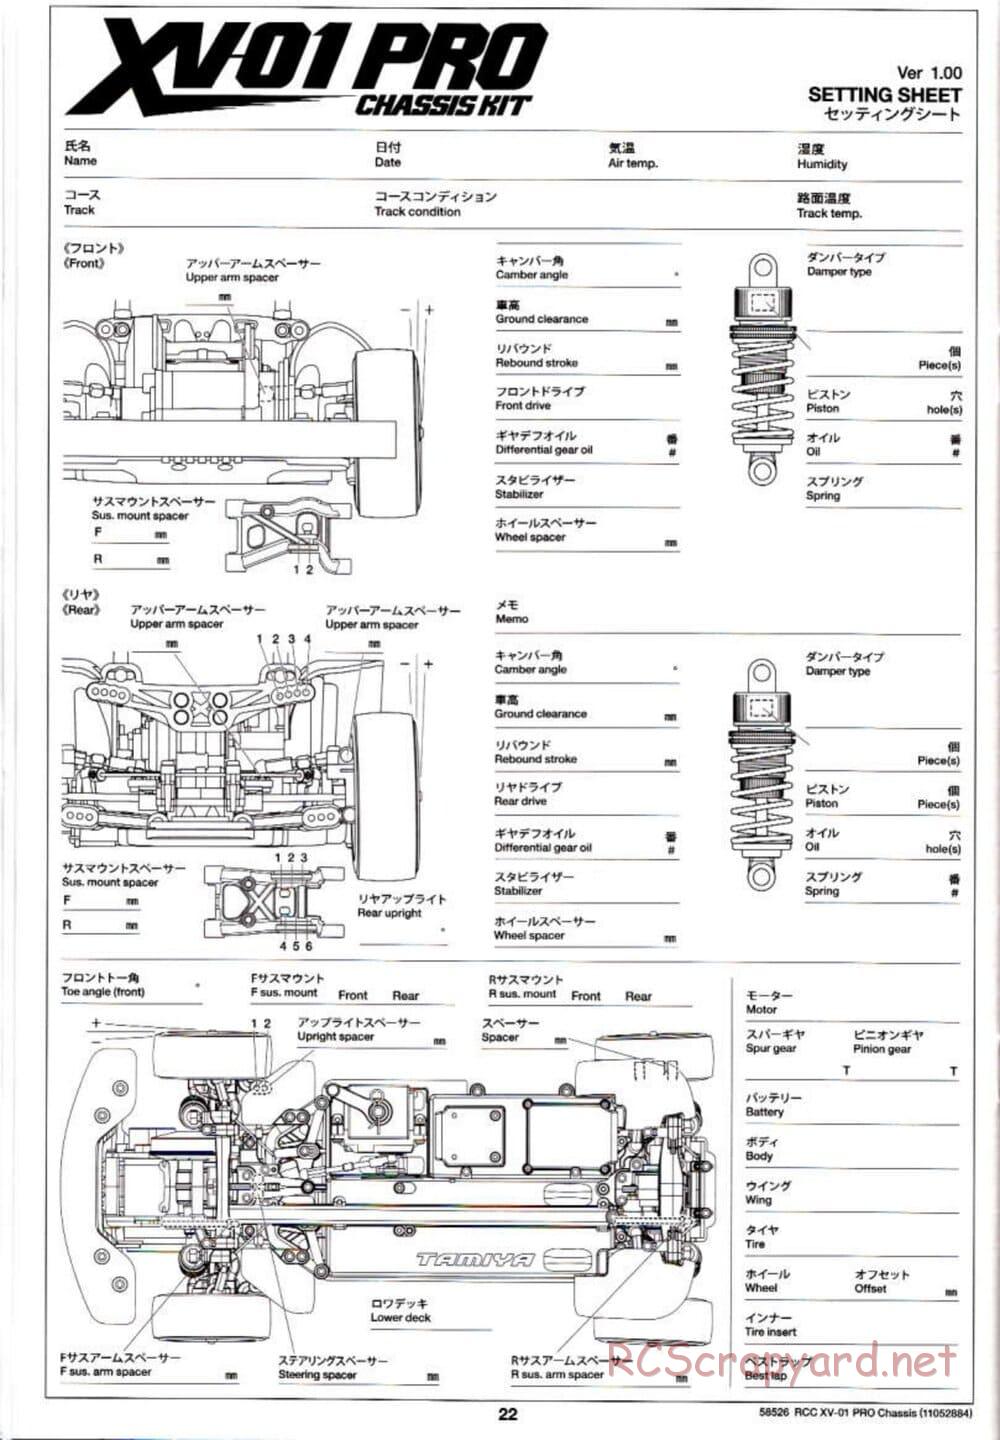 Tamiya - XV-01 PRO Chassis - Manual - Page 22